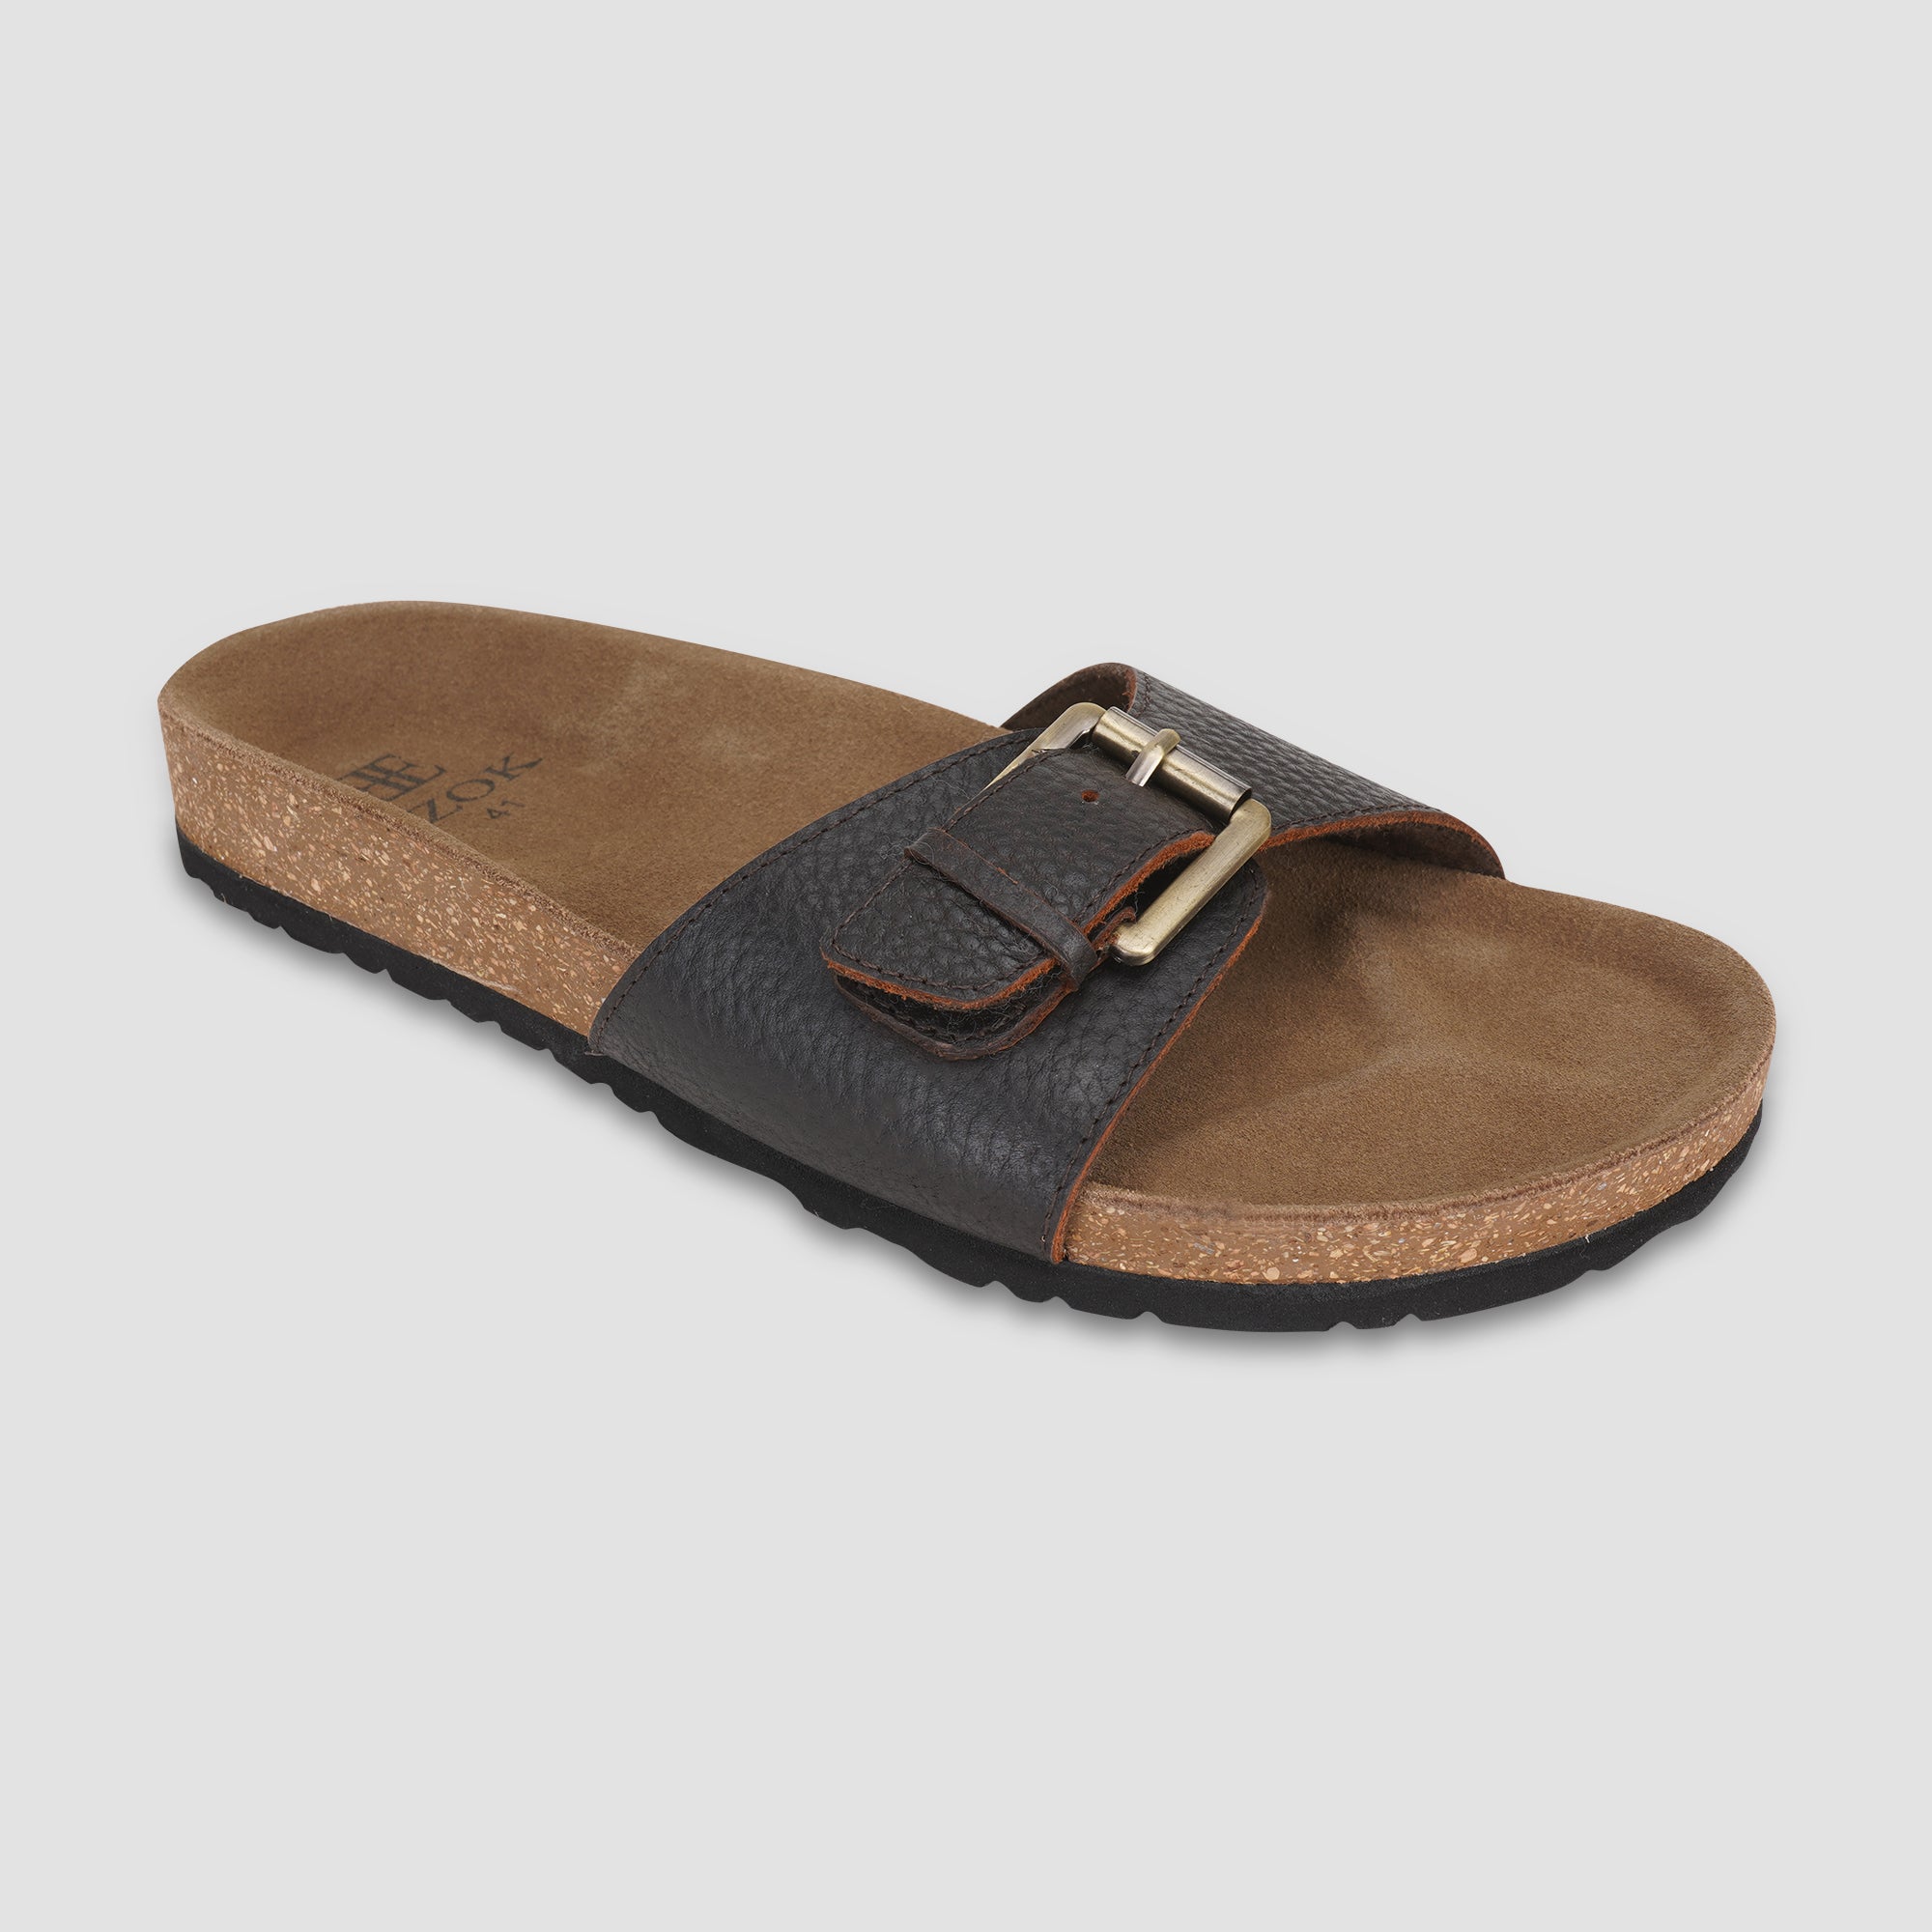 Ezok Brown Leather Sandal For Men